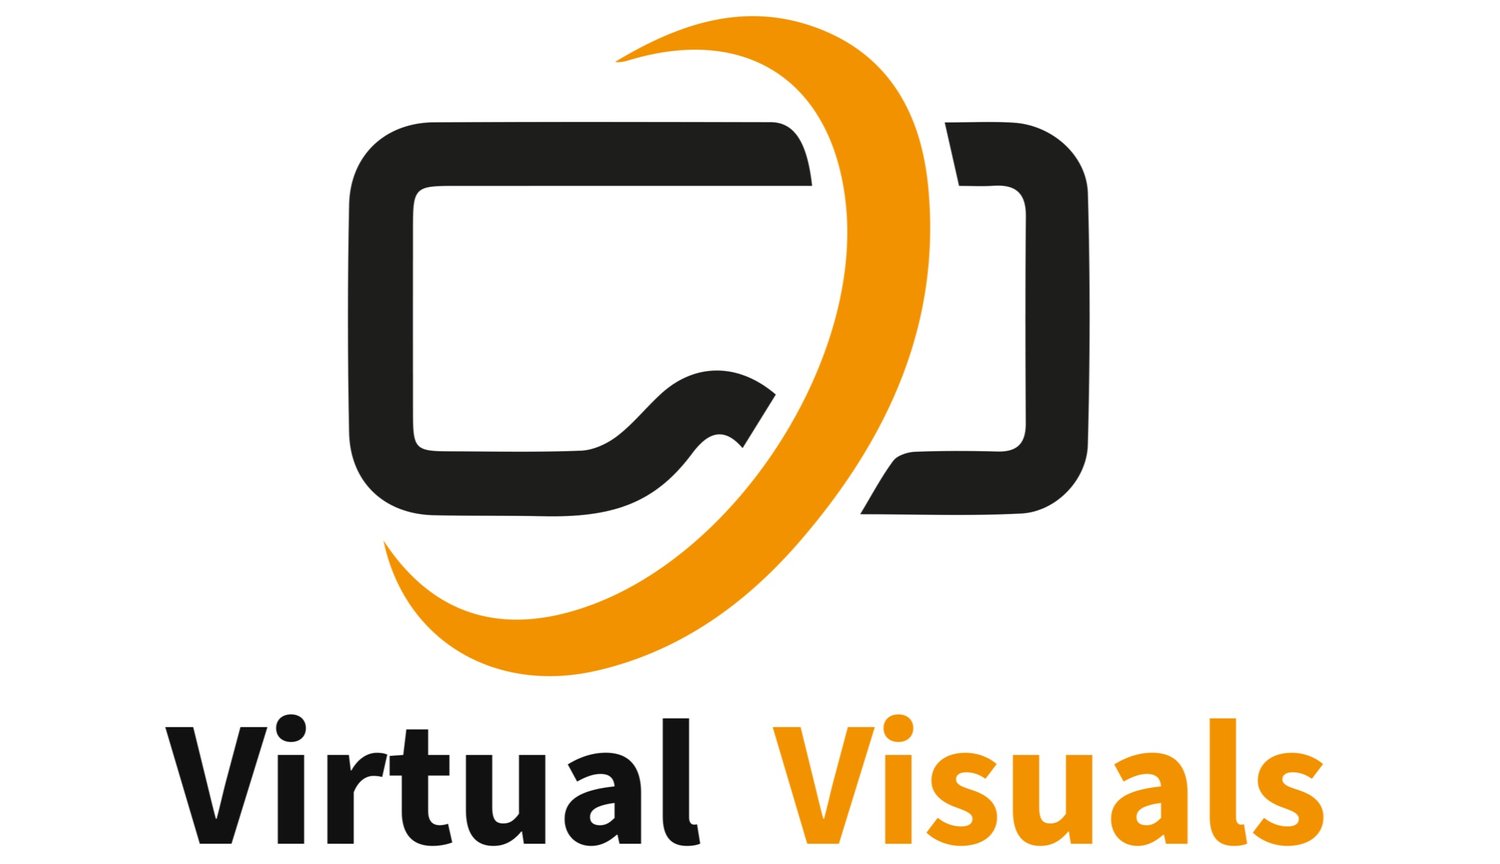 Virtual Visuals